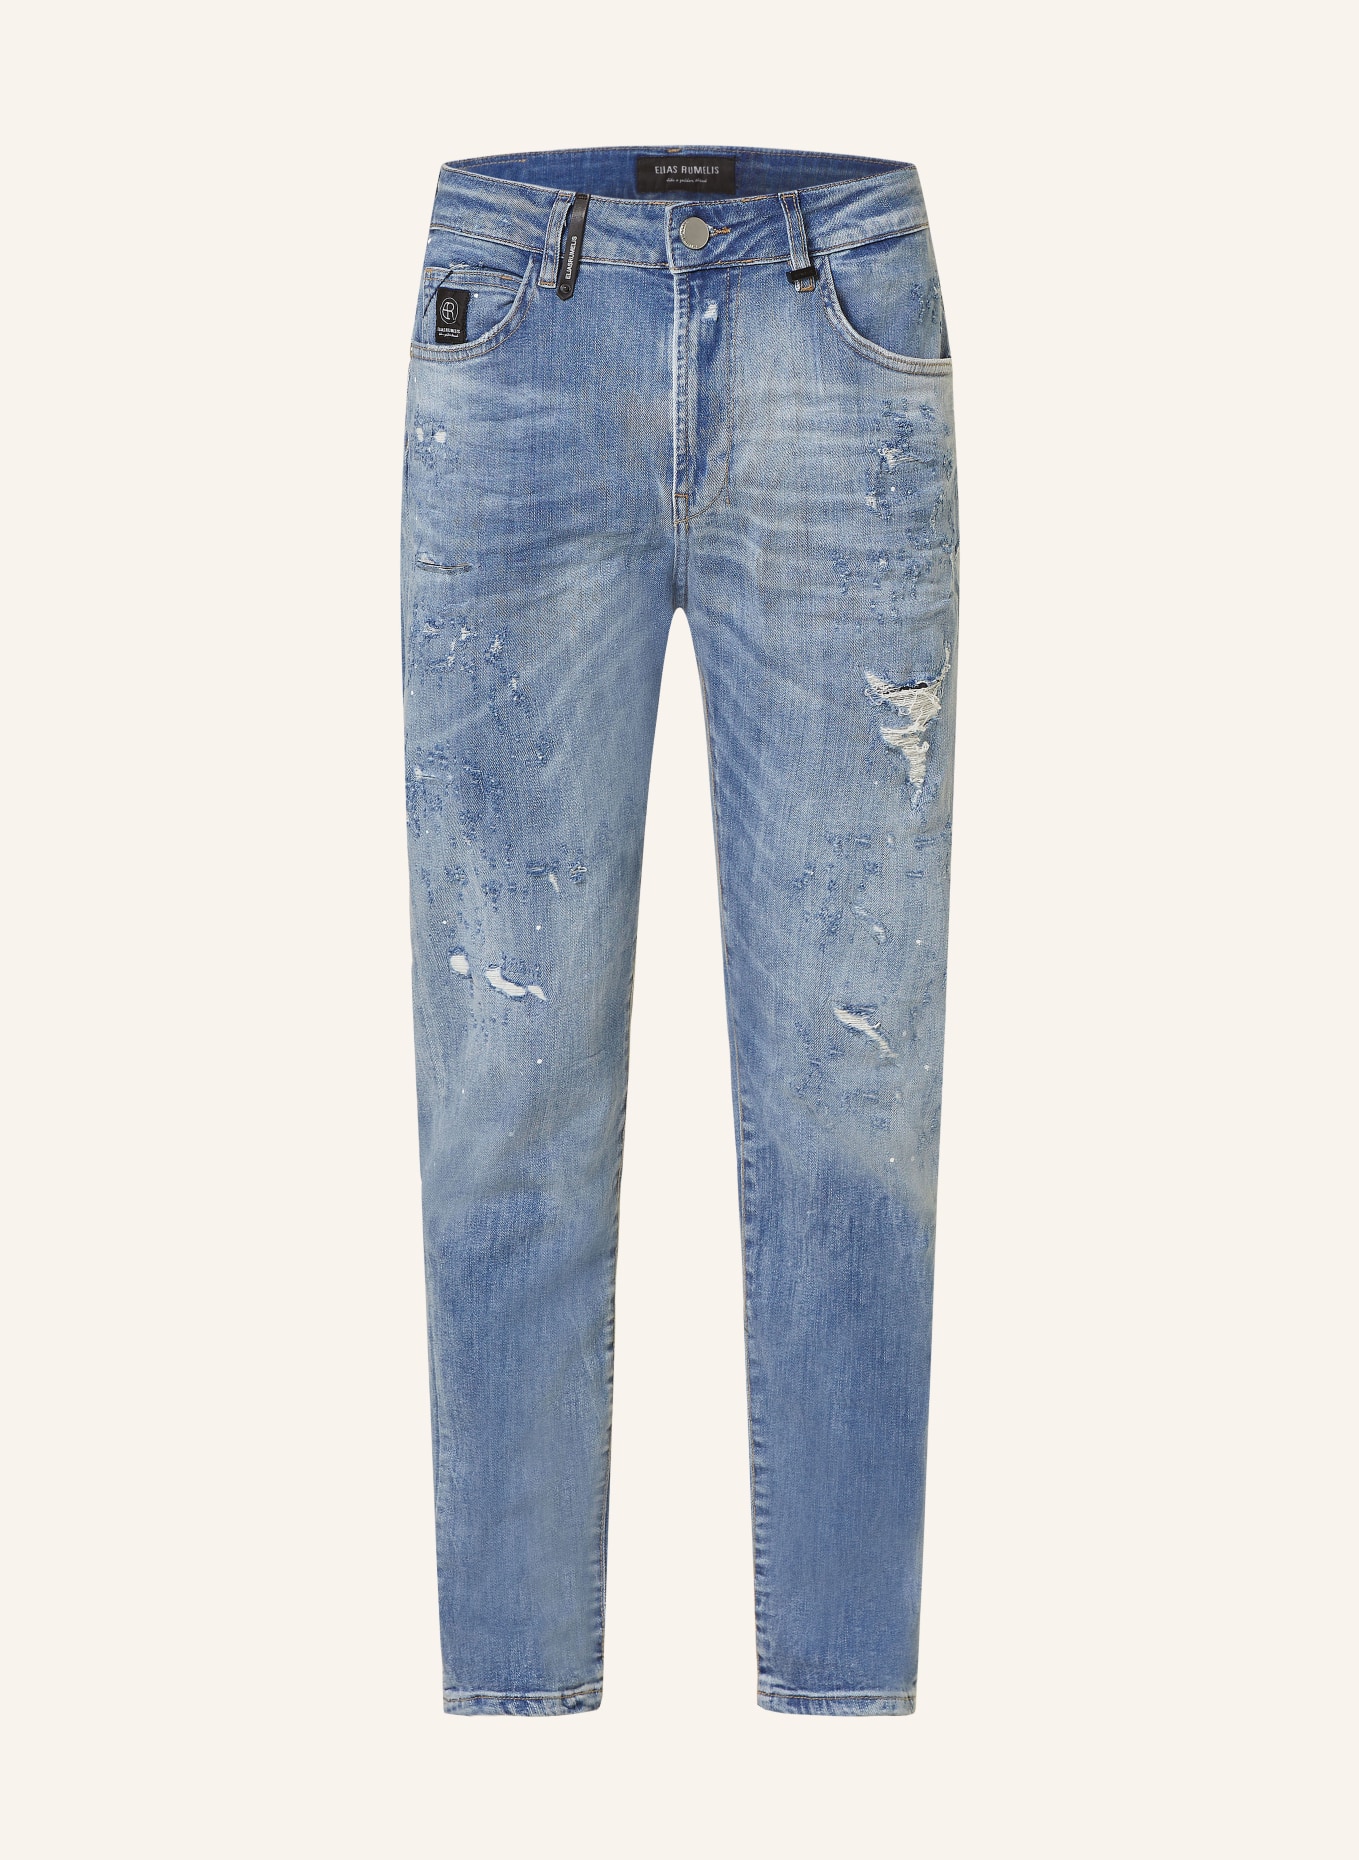 ELIAS RUMELIS Jeans ERFELICE Comfort Fit, Farbe: 782 Crazy Medium Blue (Bild 1)